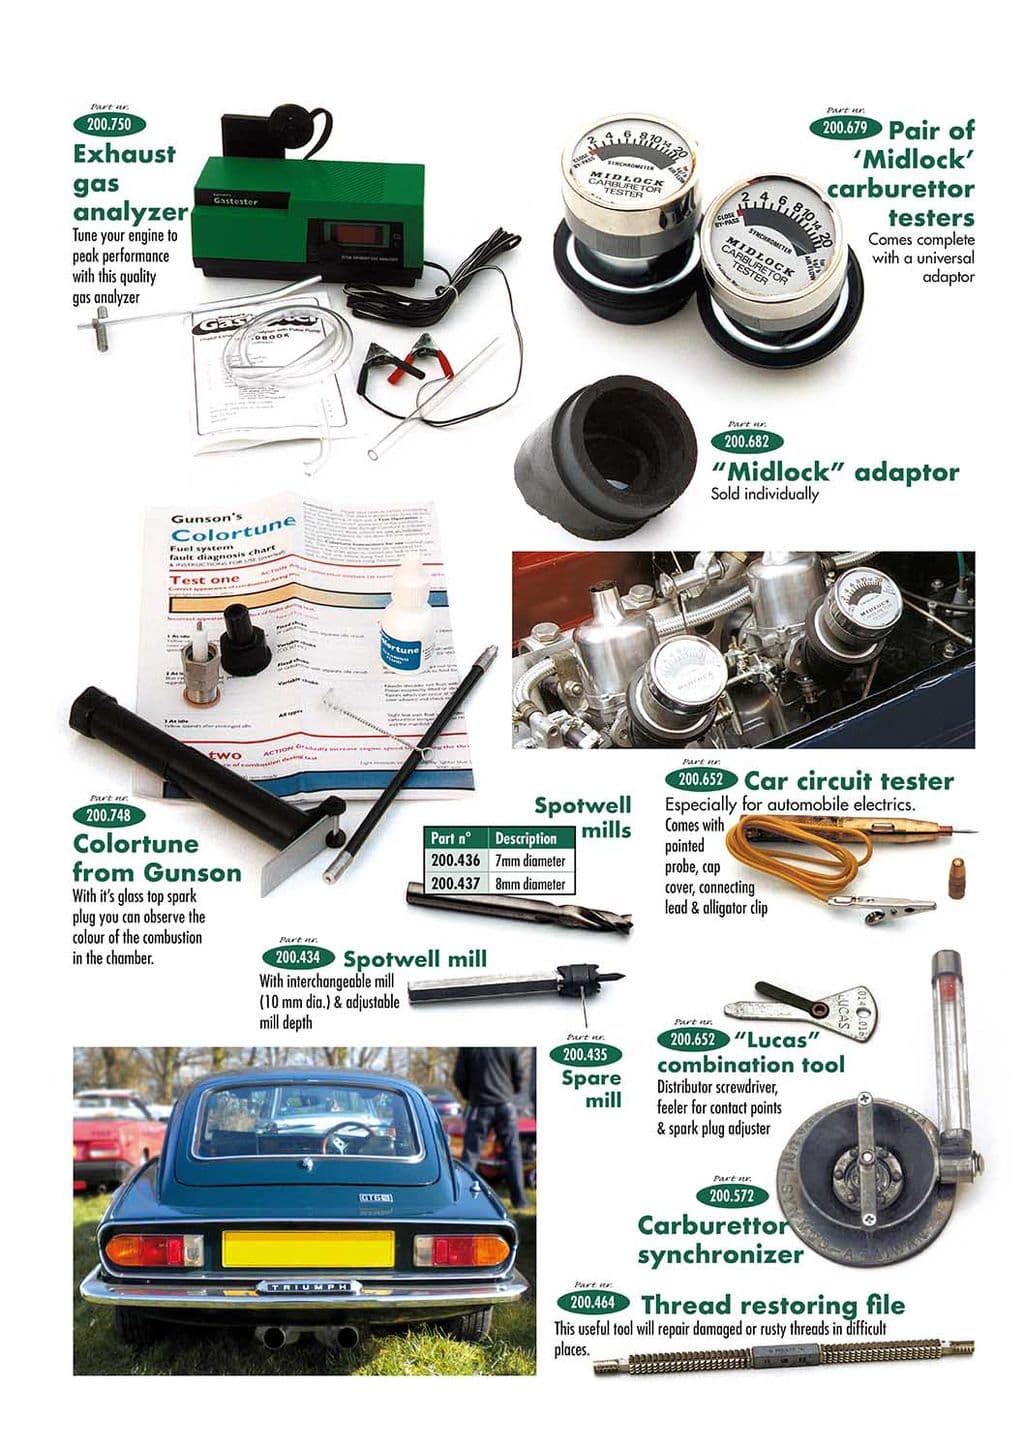 Carburettor Tools - Carburettors - Engine - Triumph TR5-250-6 1967-'76 - Carburettor Tools - 1